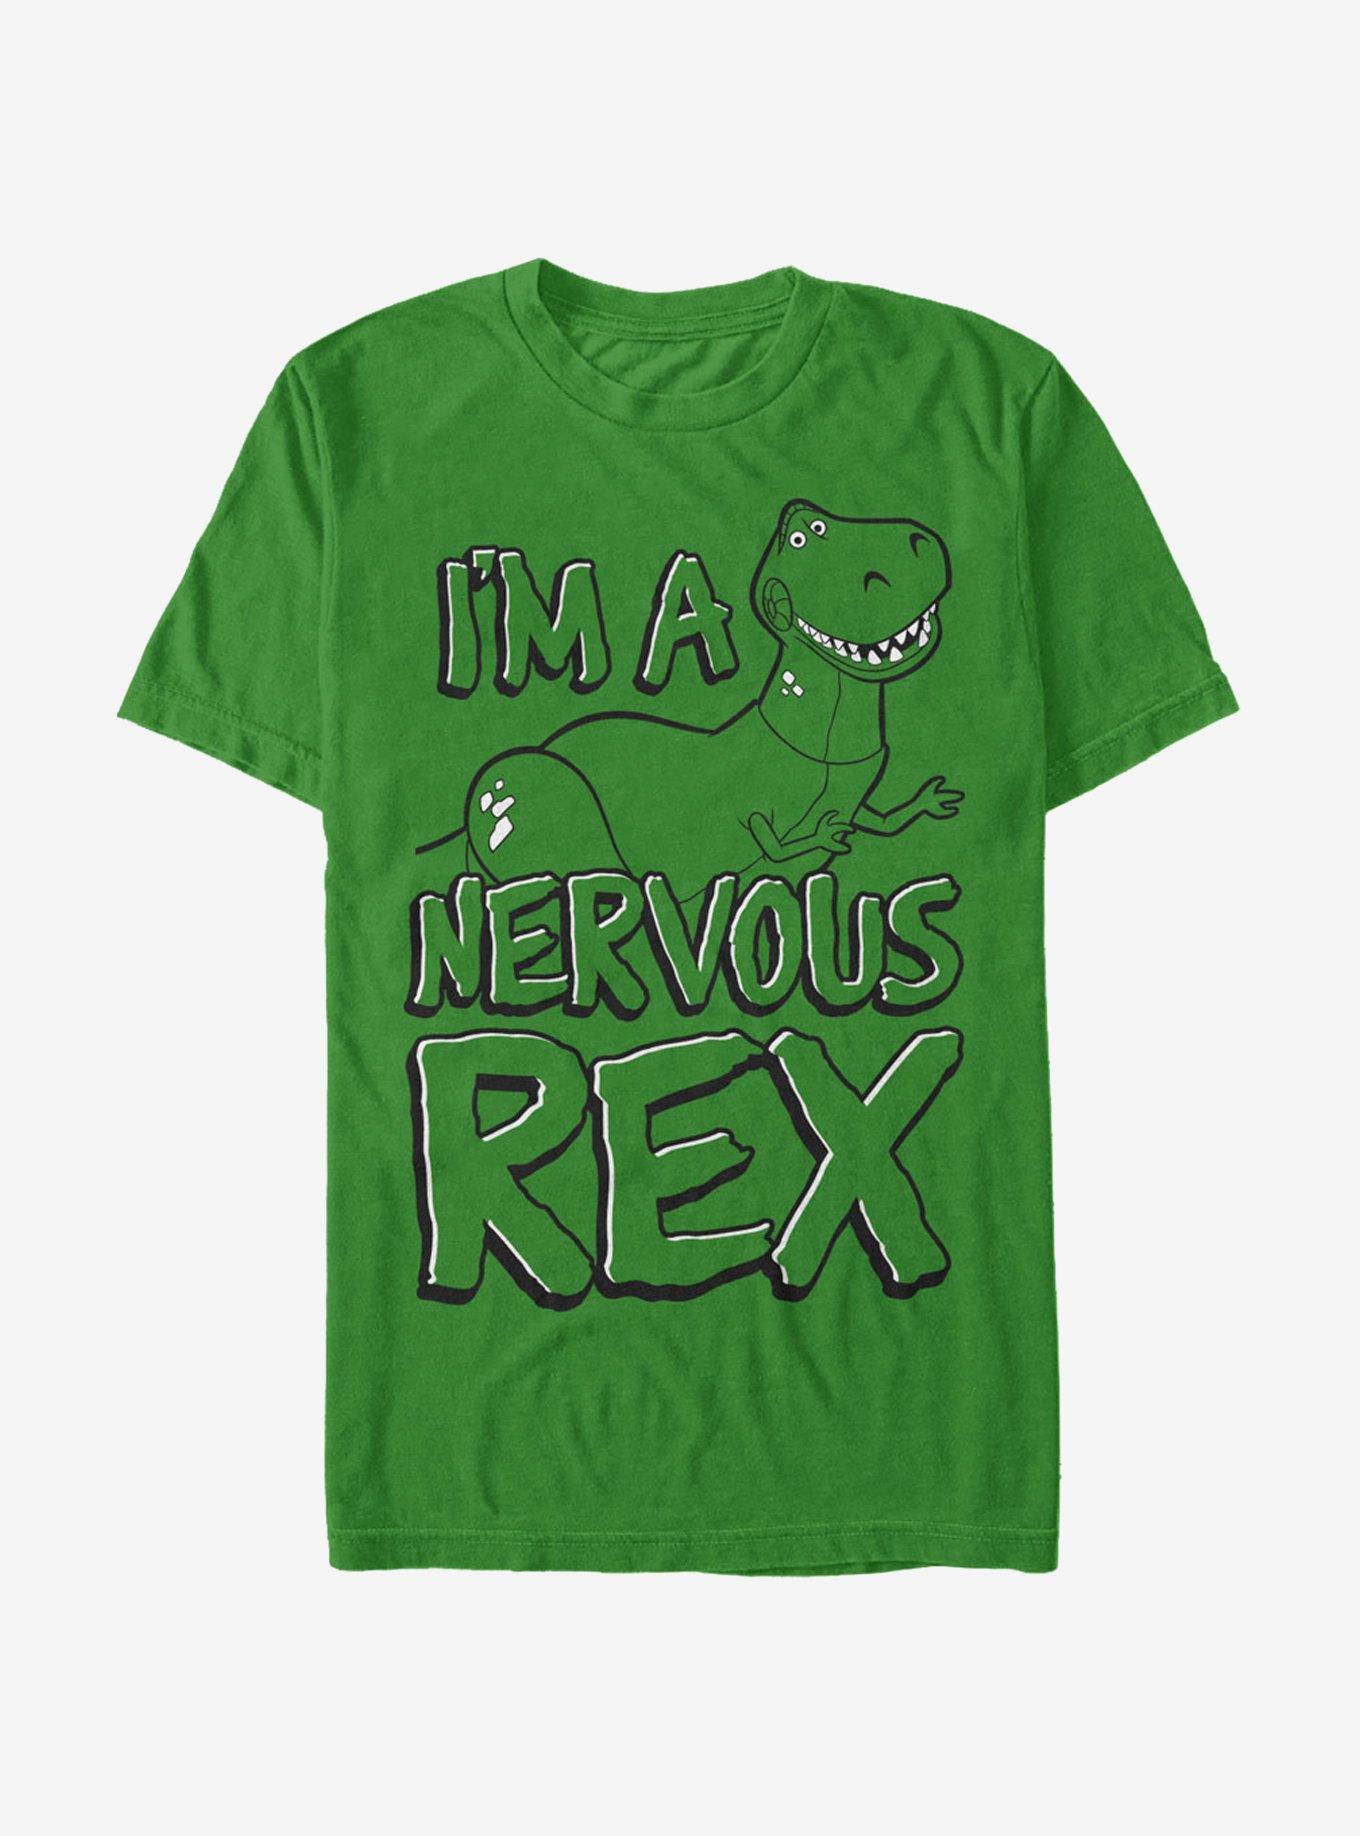 Toy Story Nervous Rex T-Shirt, KELLY, hi-res